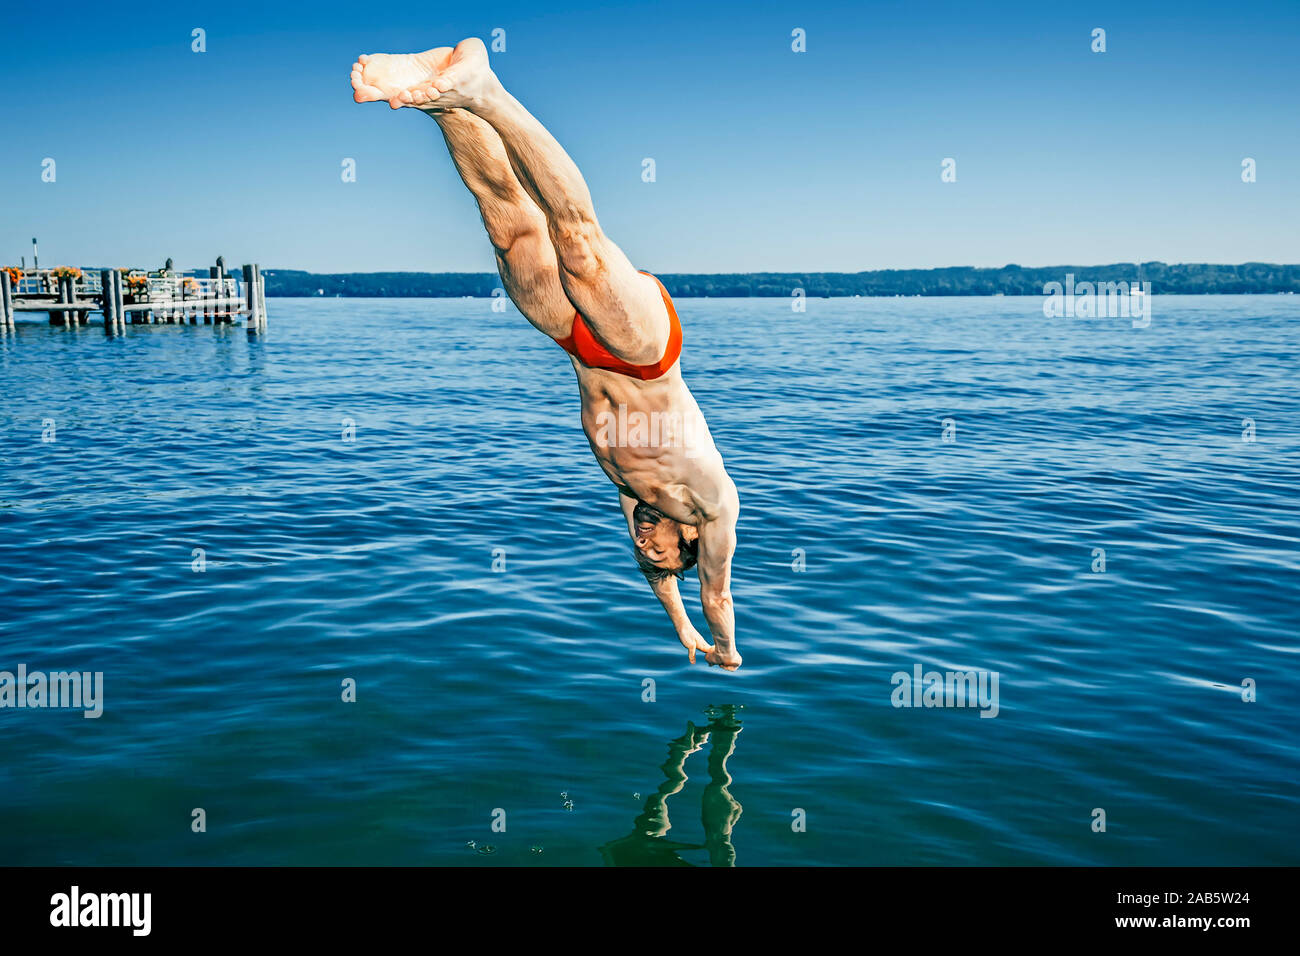 Ein junger Mann in roter Badehose, der in den Starnberger See springt Foto Stock